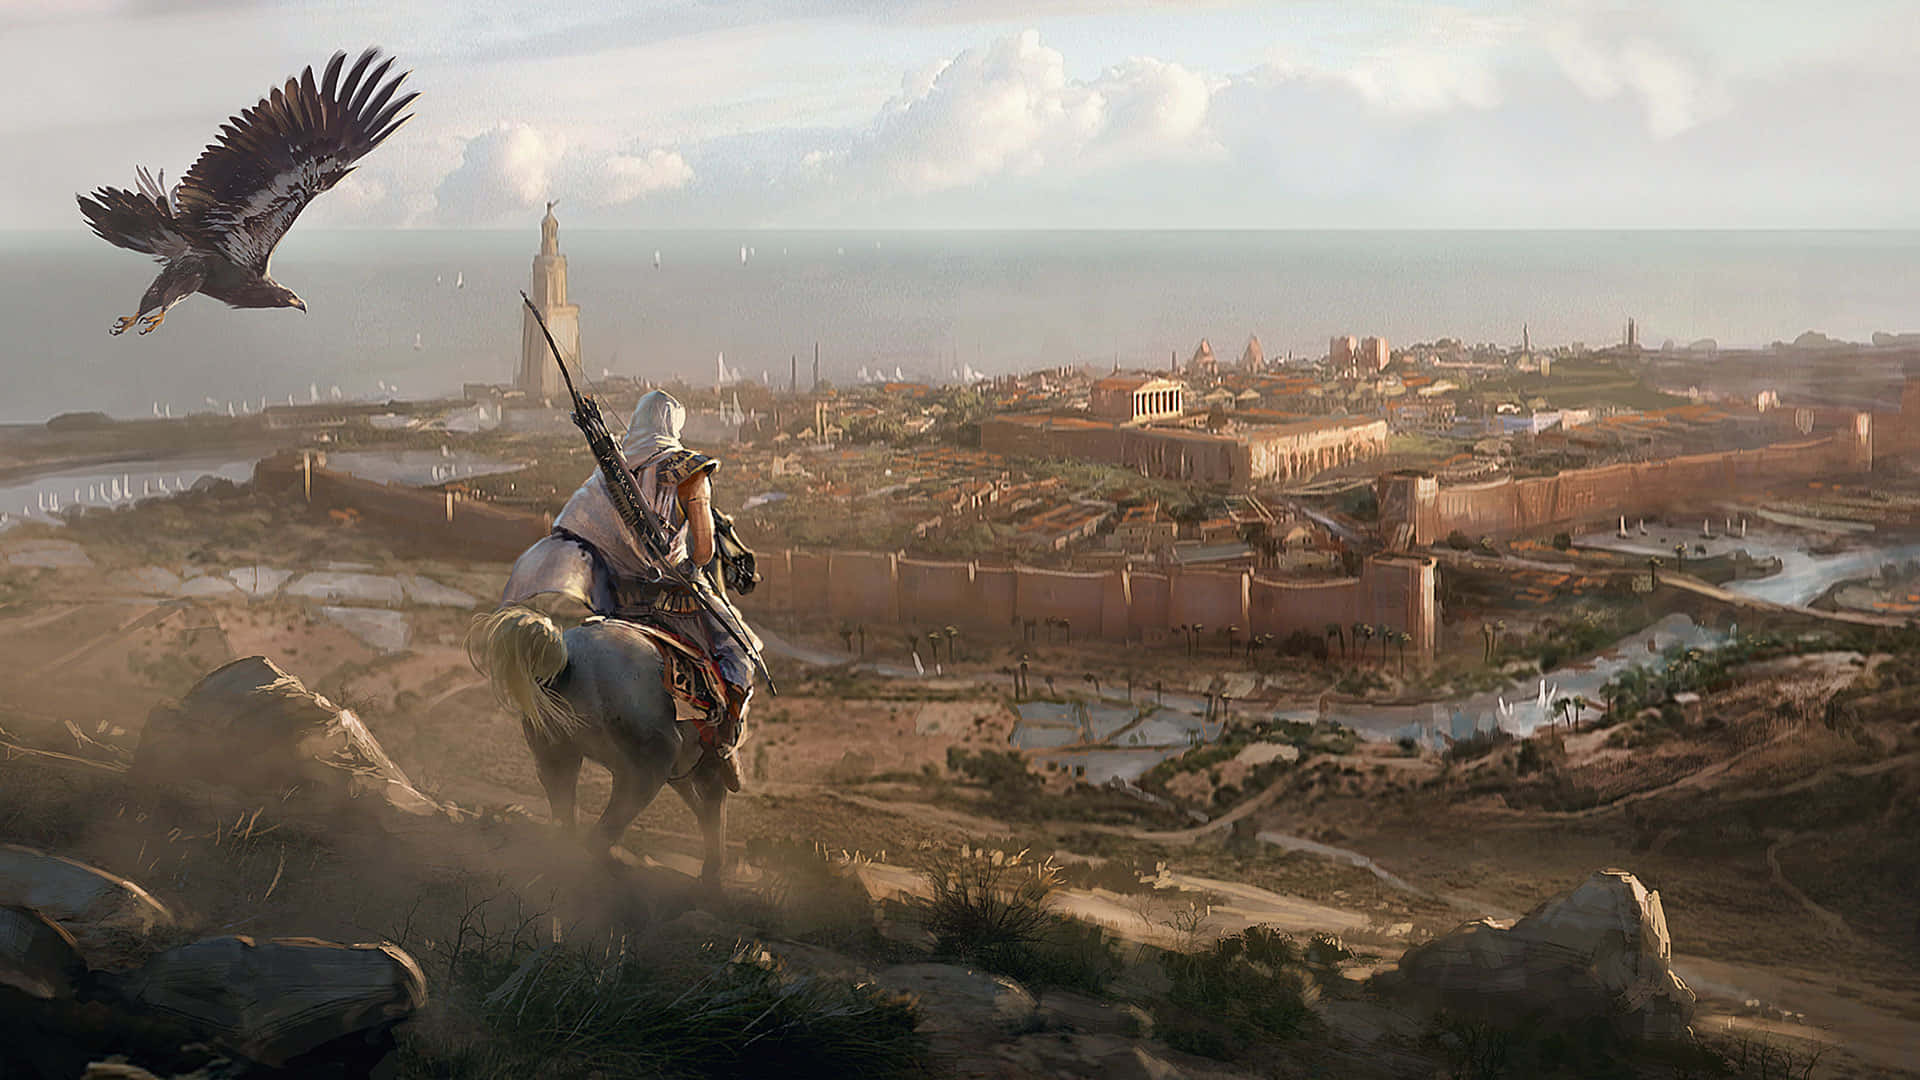 Afslørde Gamle Hemmeligheder I Egypten I Assassin's Creed Origins.